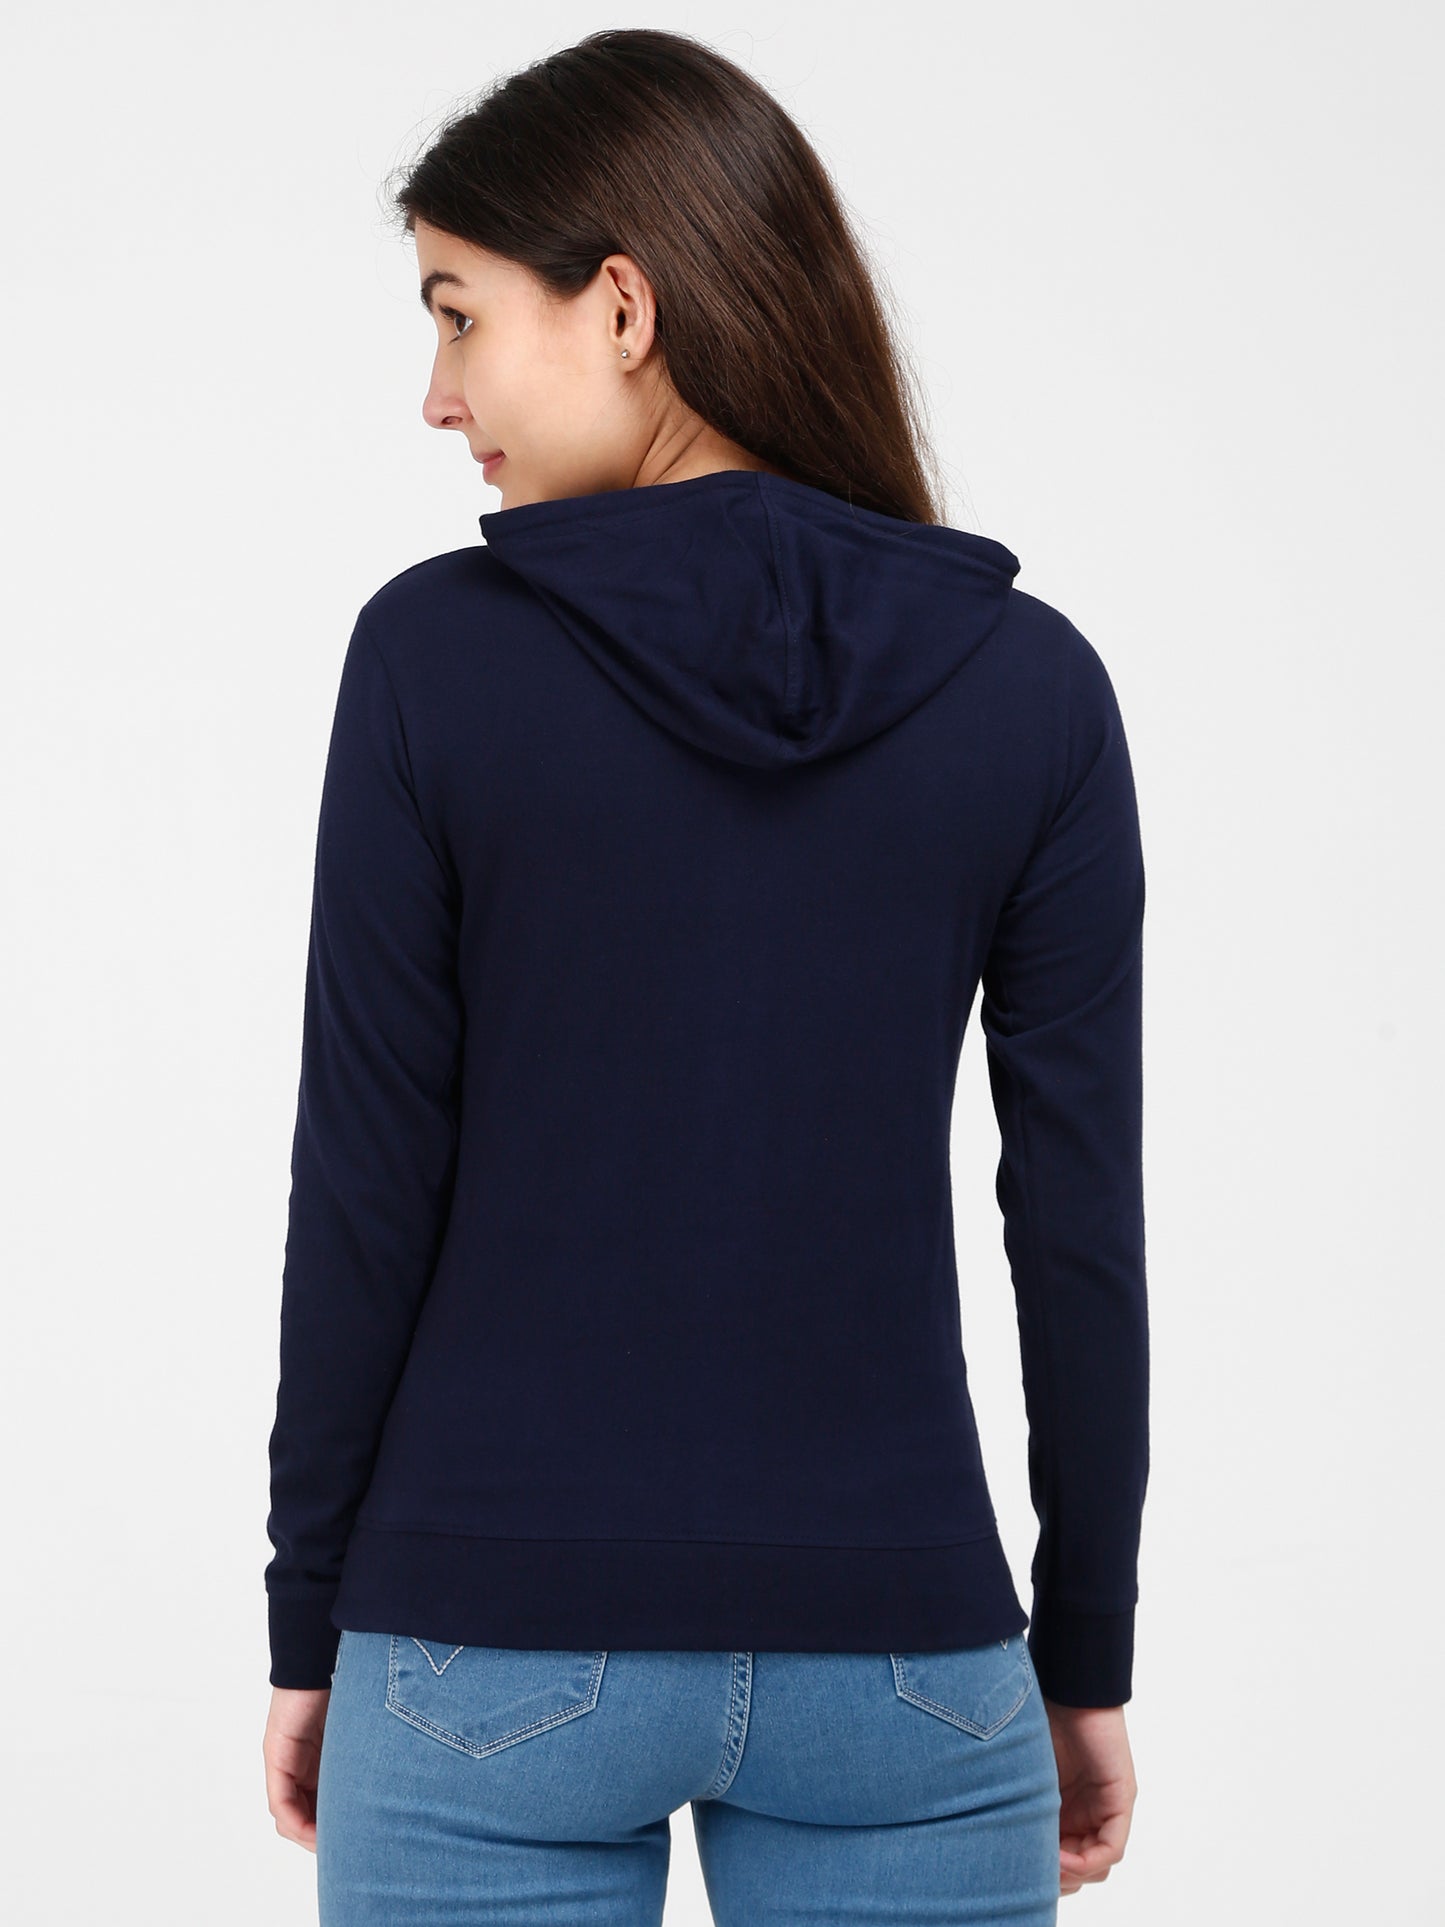 Women's Cotton Printed Full Sleeve Navy Blue Color Sweatshirt/Hoodies